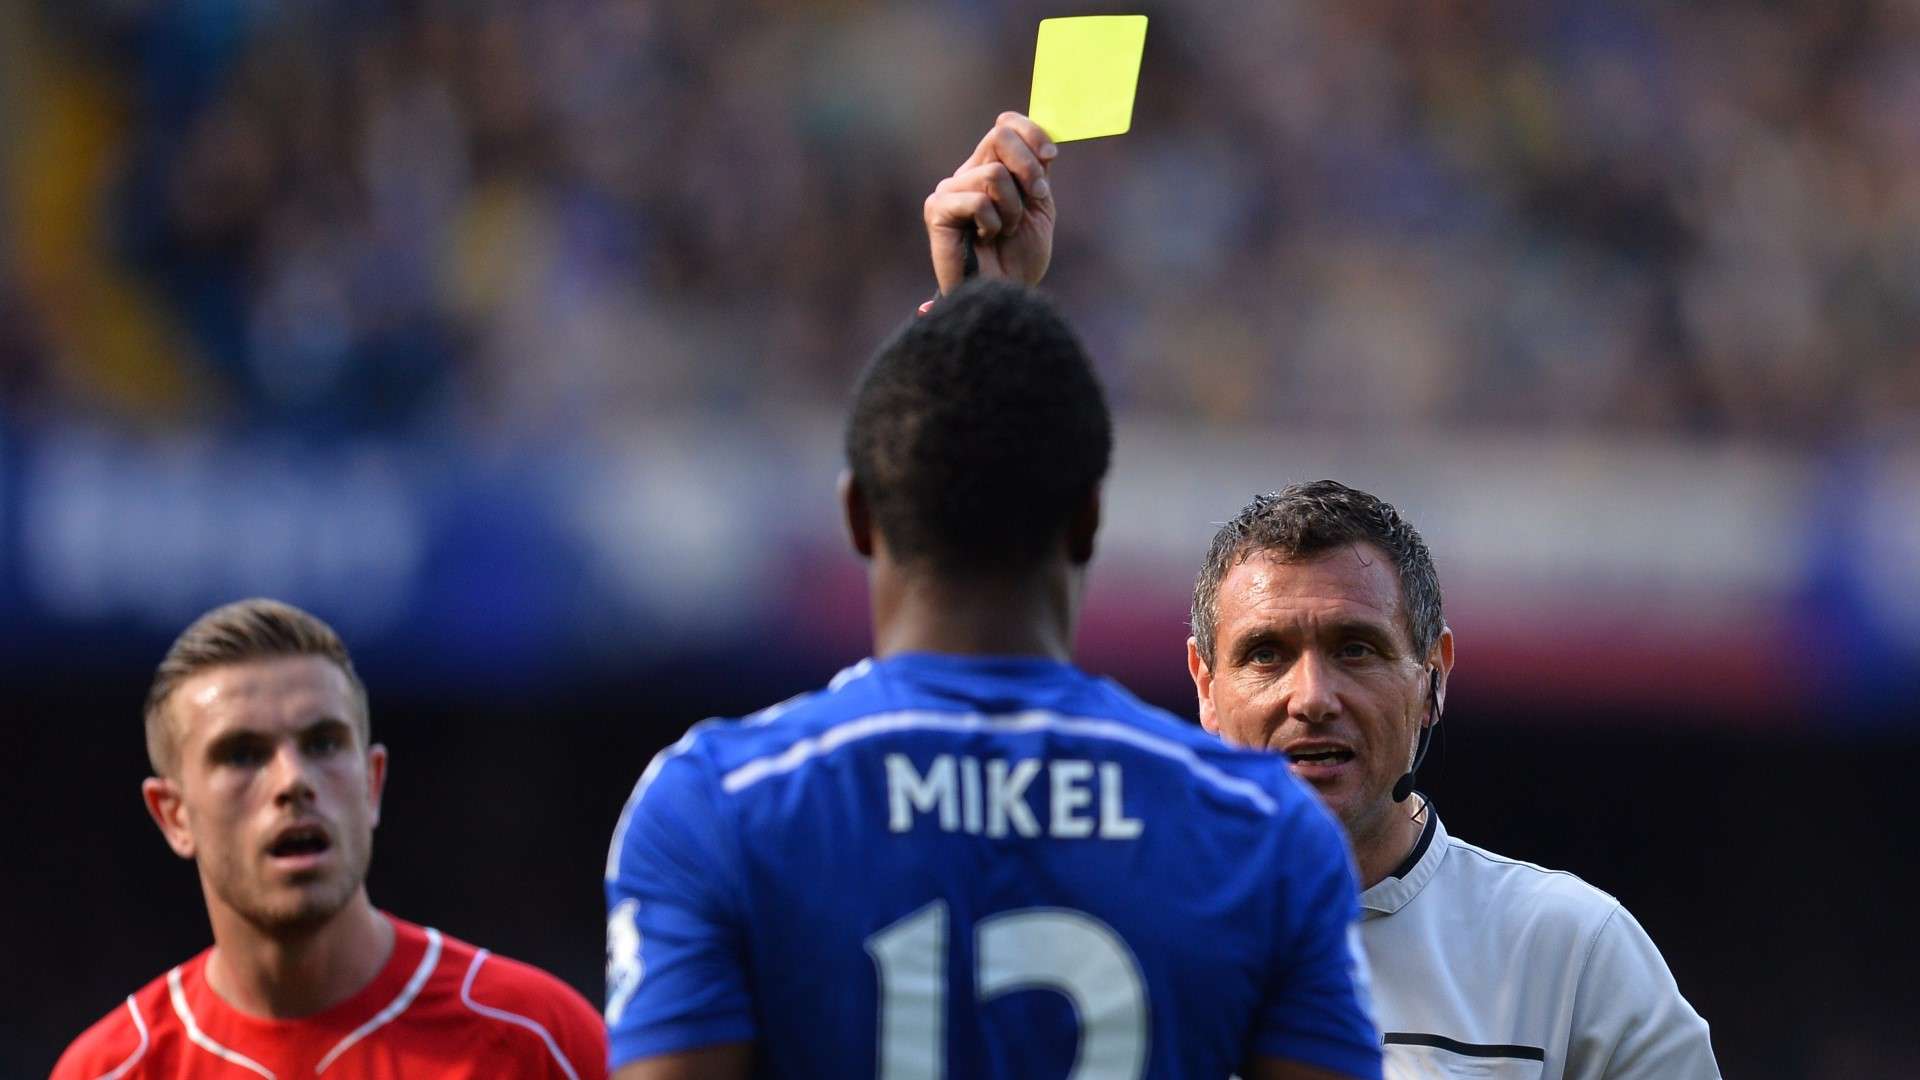 John Obi Mikel in action for Chelsea against Jordan Henderson's Liverpool